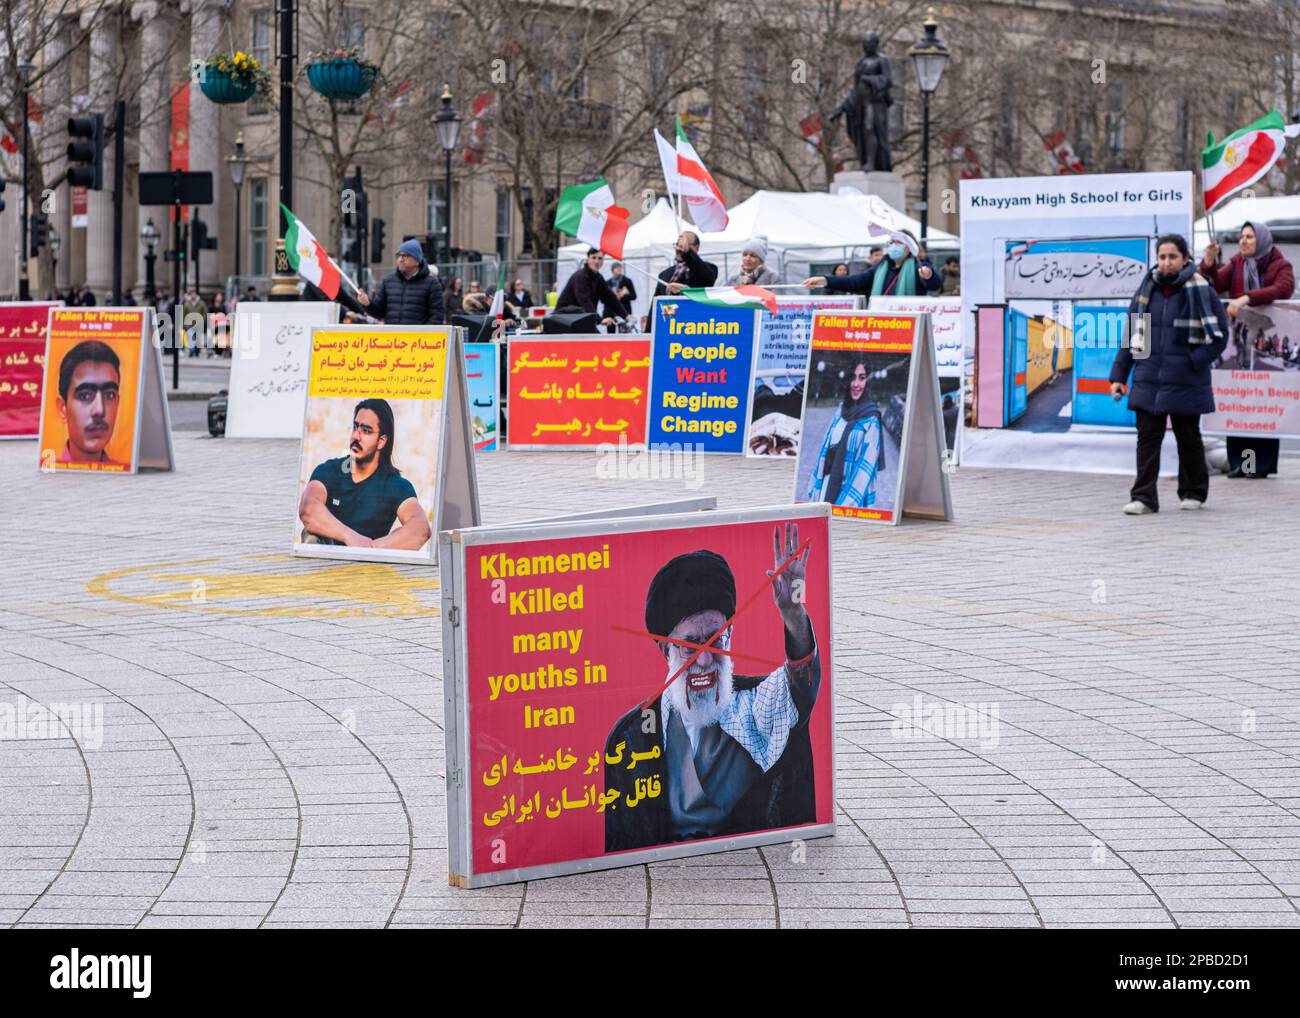 Gli iraniani organizzano un rally di protesta a Trafalgar Square per esprimere la propria solidarietà alle rivolte iraniane contro il regime dei mullah. 11th marzo 23. Foto Stock